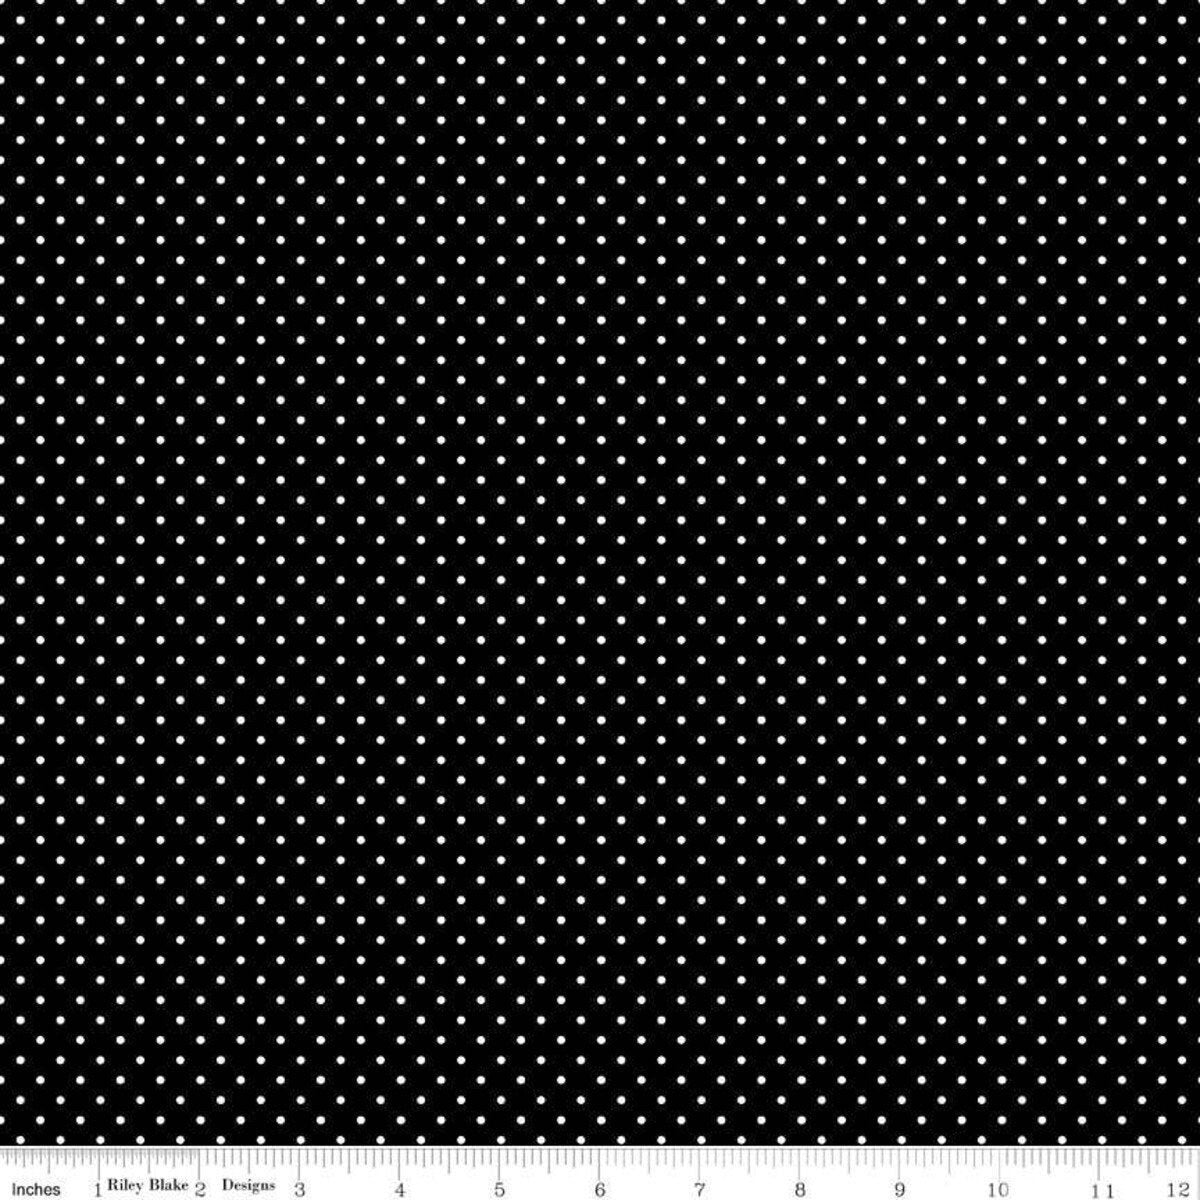 Swiss Dot Black by Riley Blake Designs